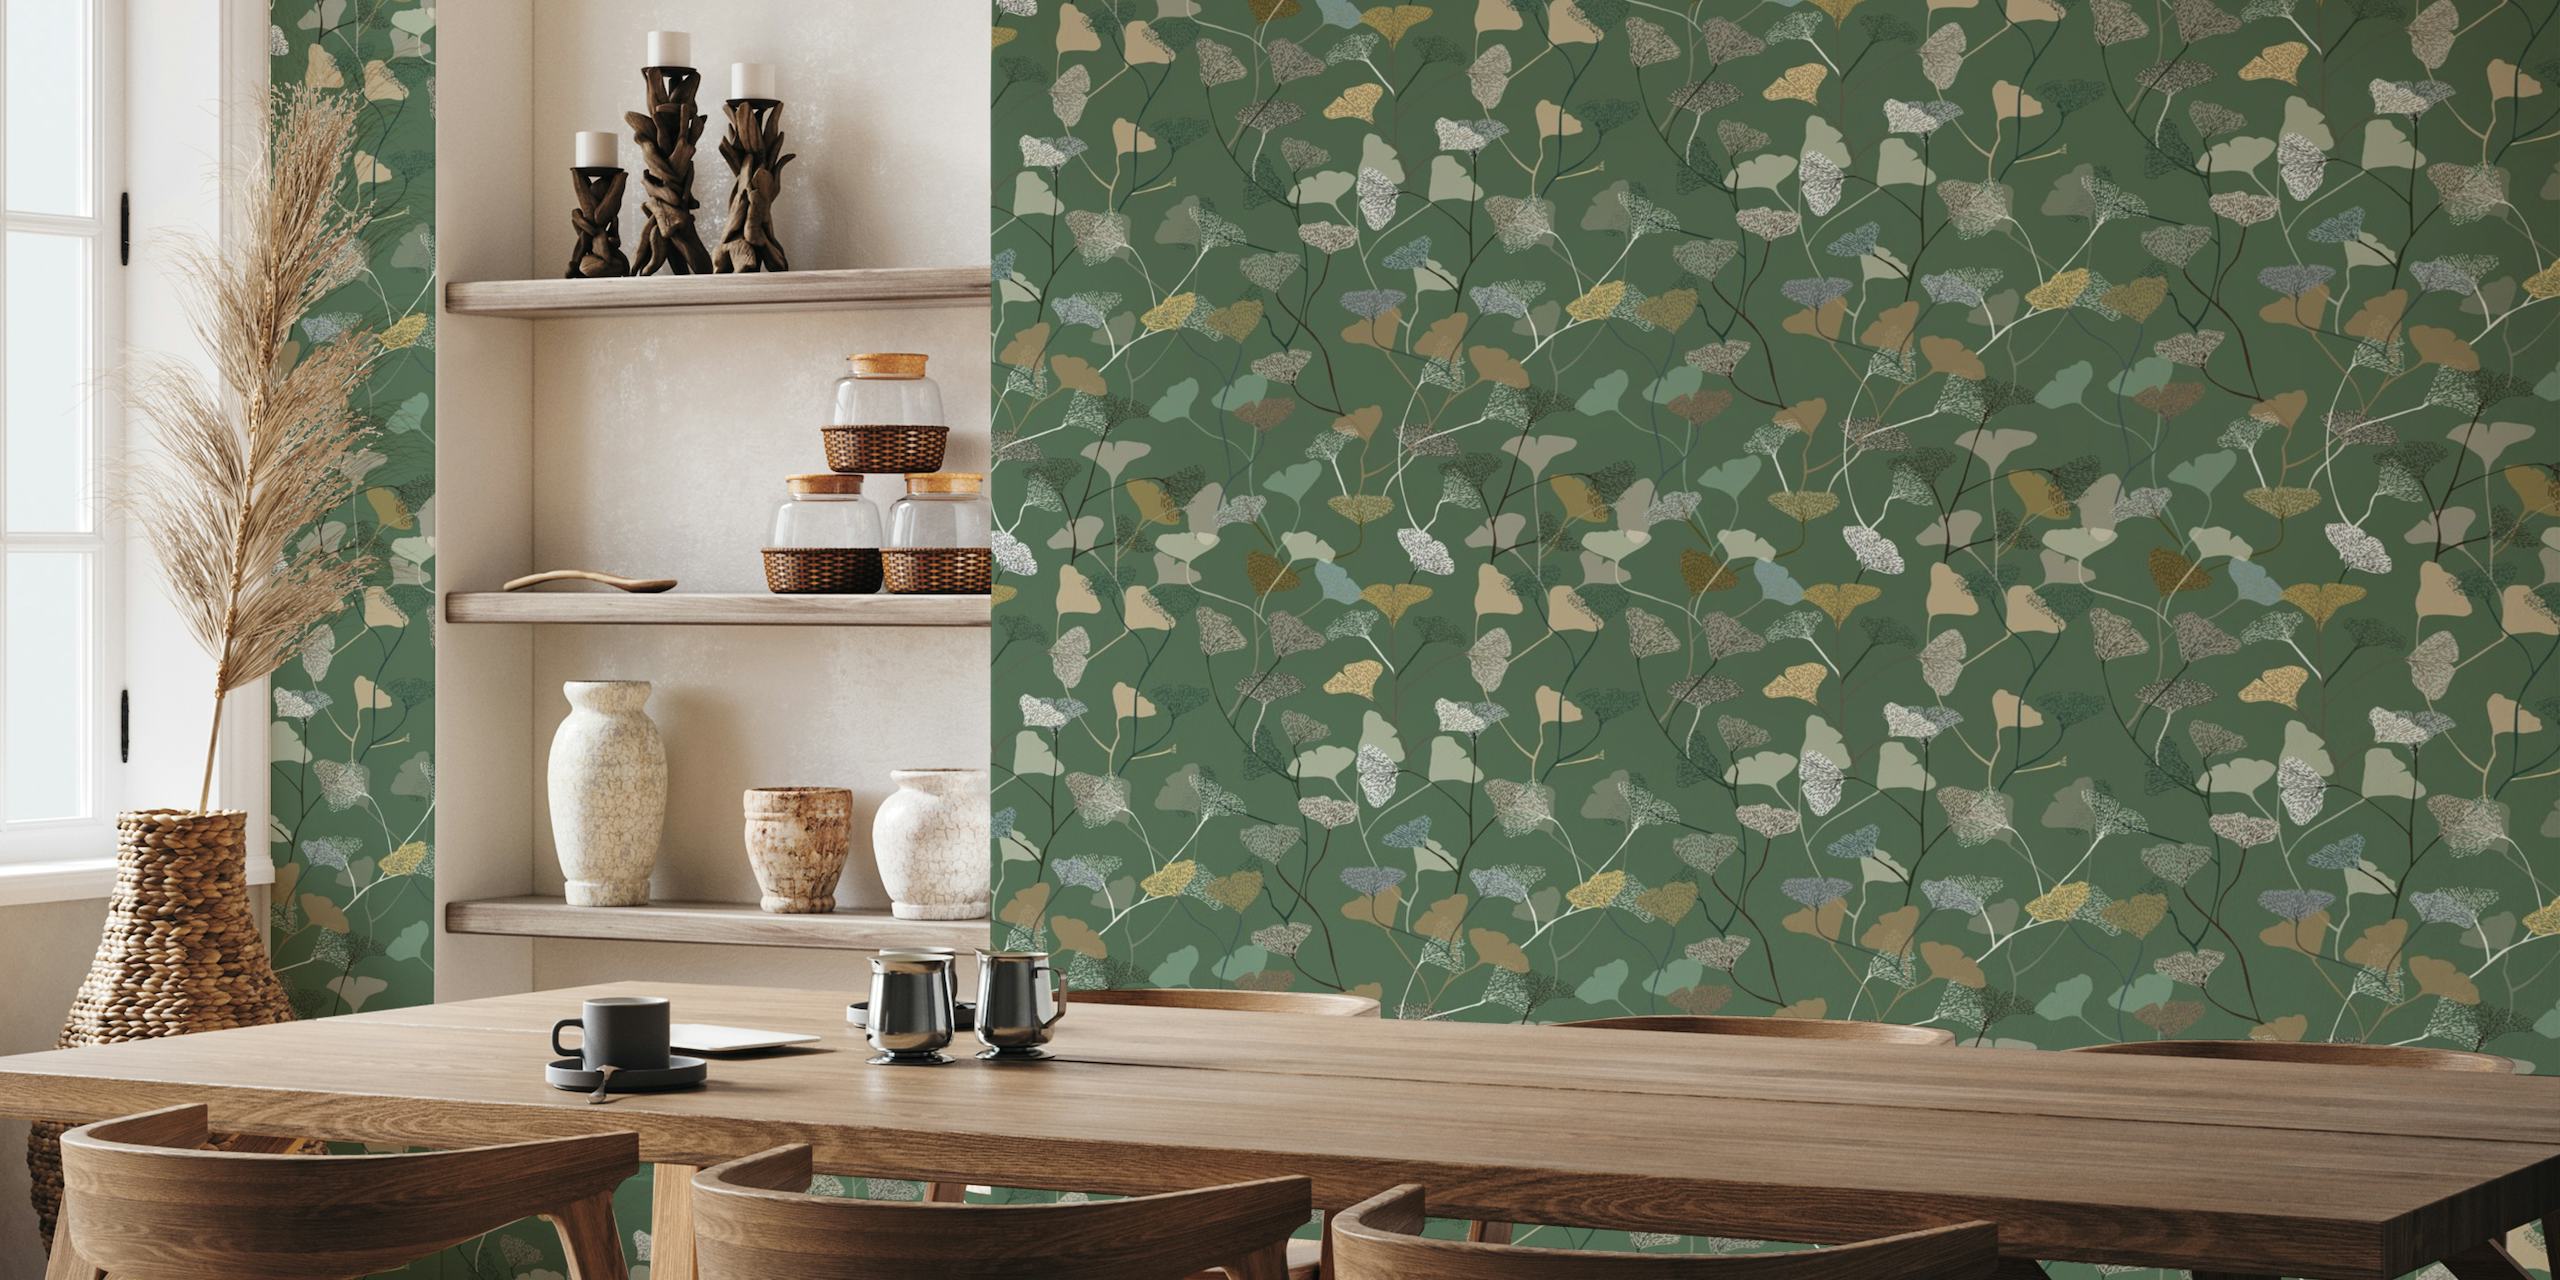 Mural de parede Ginkgo Leaves Green apresentando um padrão de folhas de ginkgo biloba em vários tons de verde com detalhes dourados e brancos.